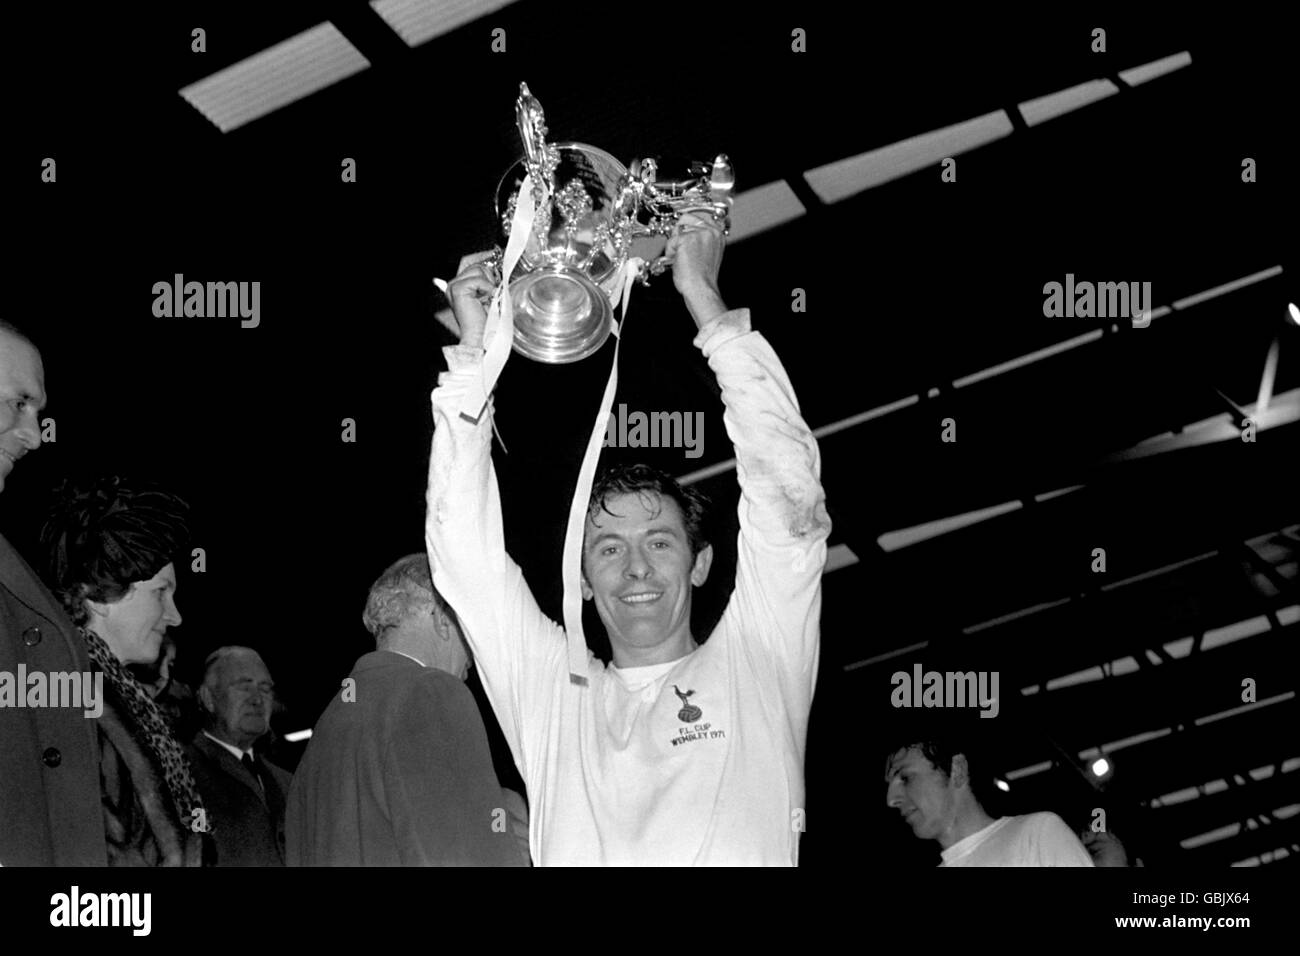 Fútbol - Copa de la Liga de Fútbol - Final - Aston Villa v Tottenham Hotspur. El capitán del Tottenham Hotspur Alan Mullery levanta la Copa de la Liga después de la victoria de su equipo en 2-0 Foto de stock